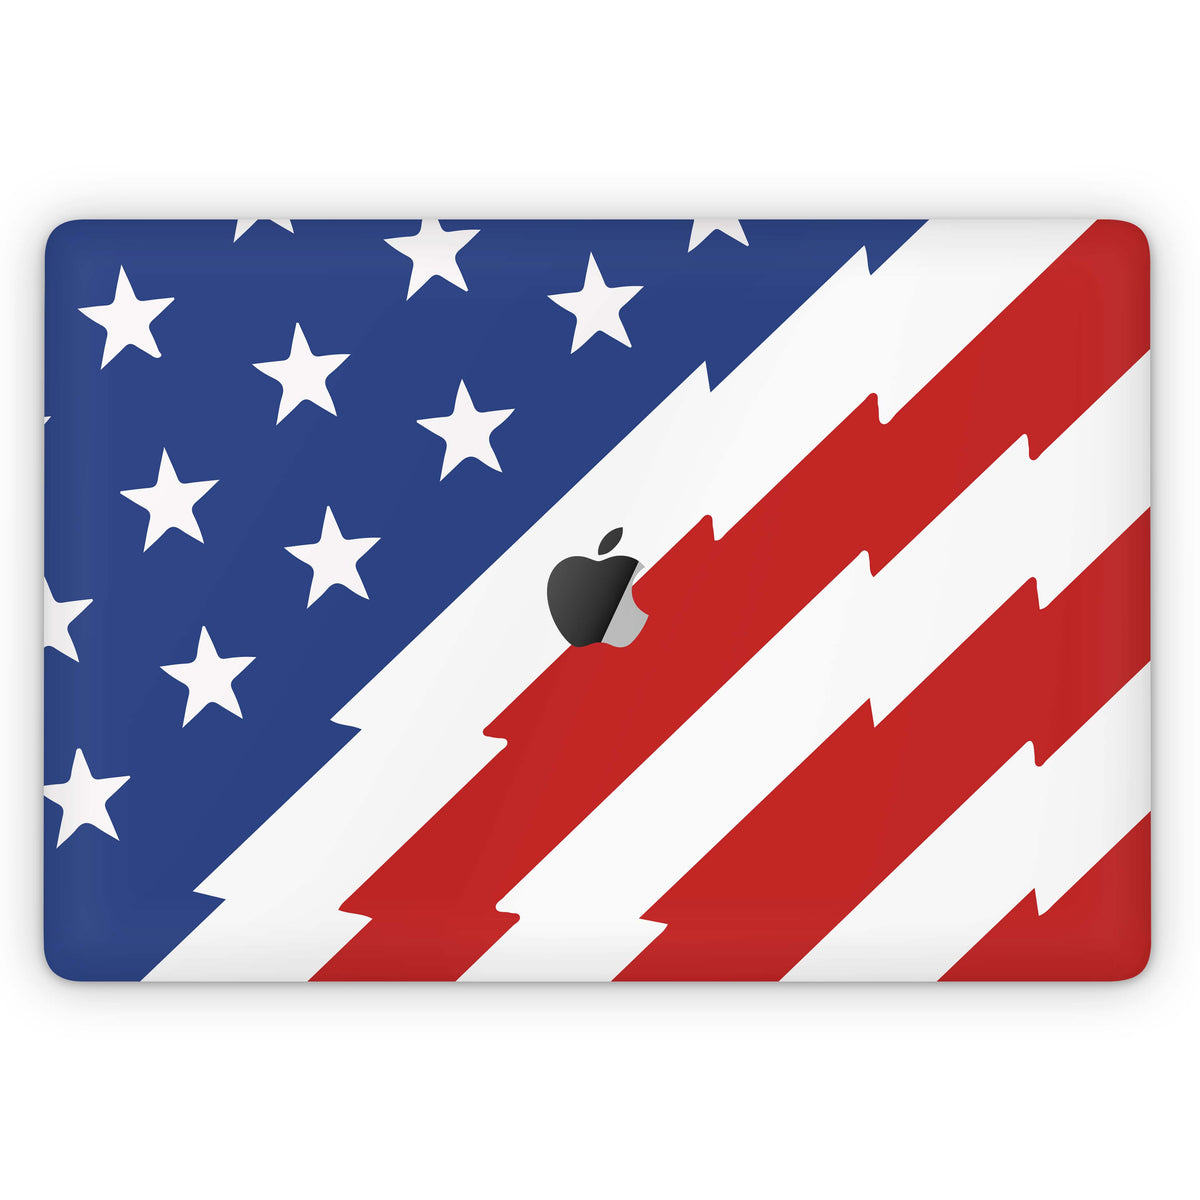 Stars and Stripes (MacBook Skin)